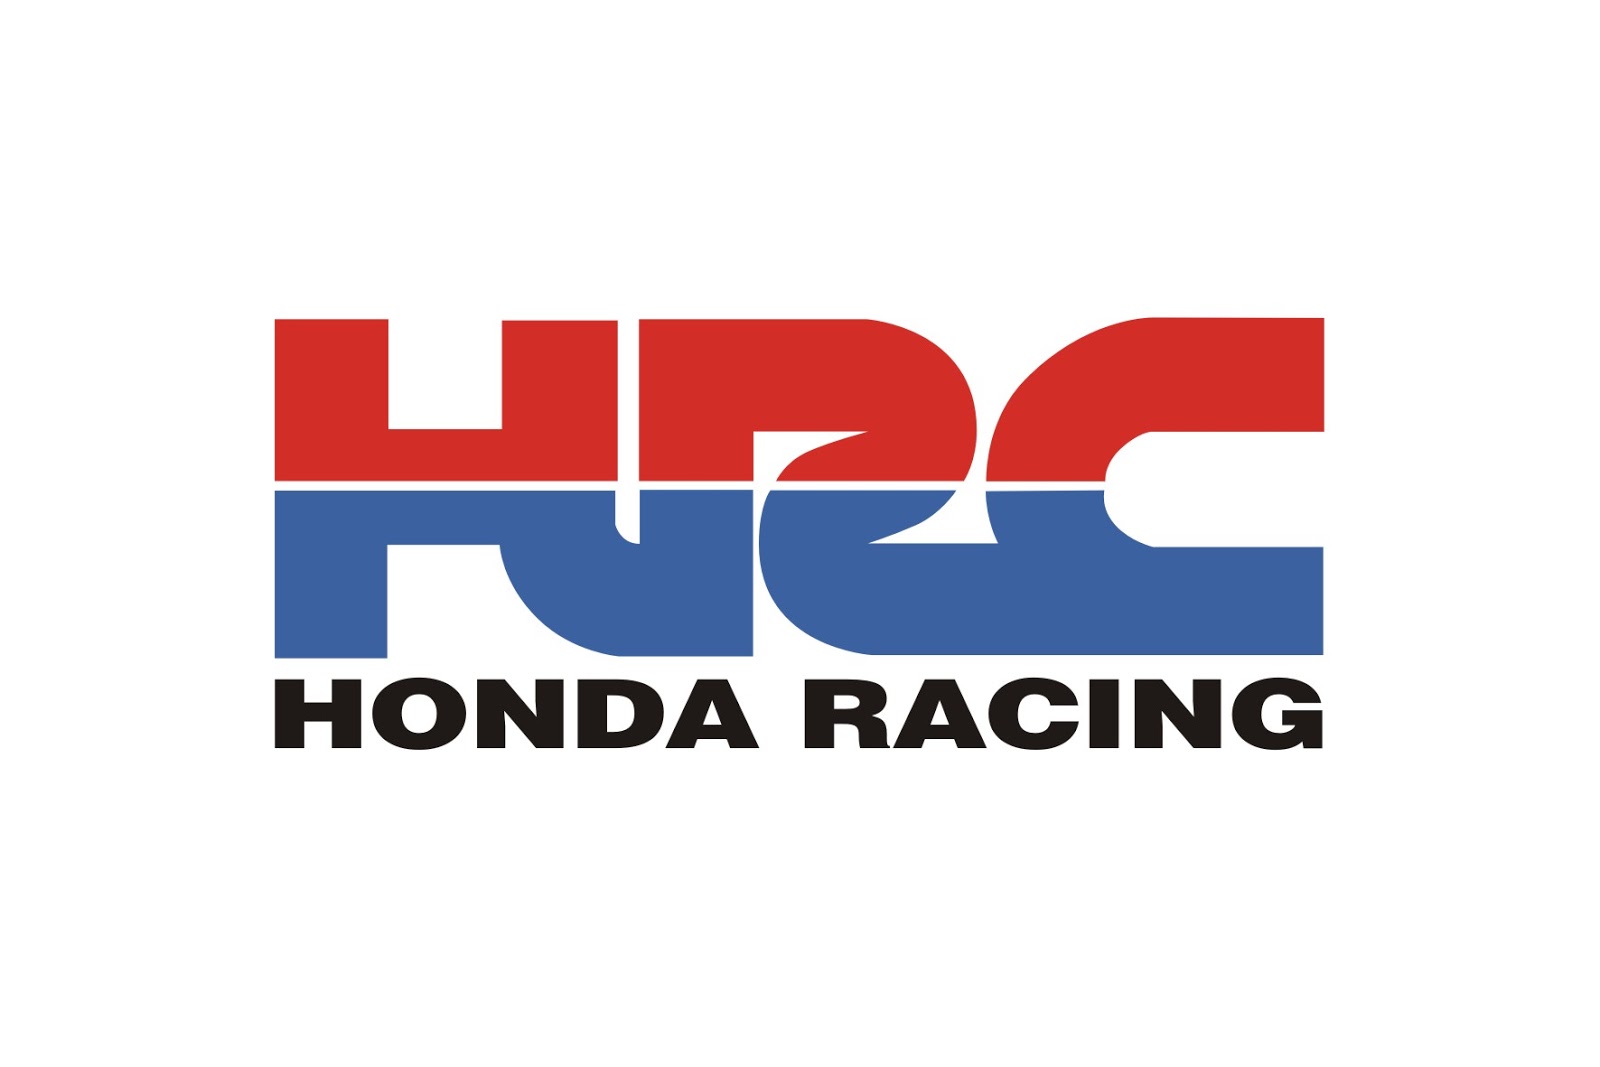 Honda racing logos #5